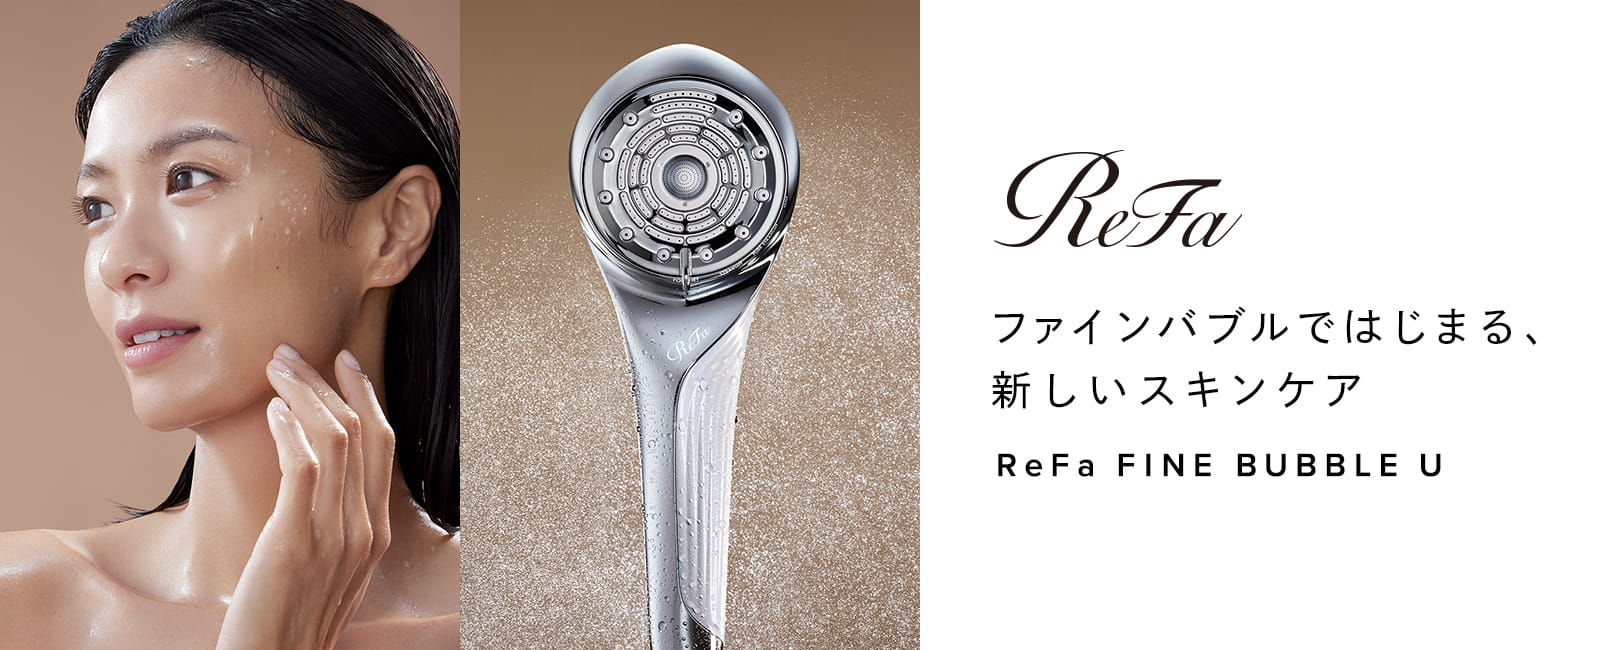 【新商品】ReFa FINE BUBBLE U販売開始しました。